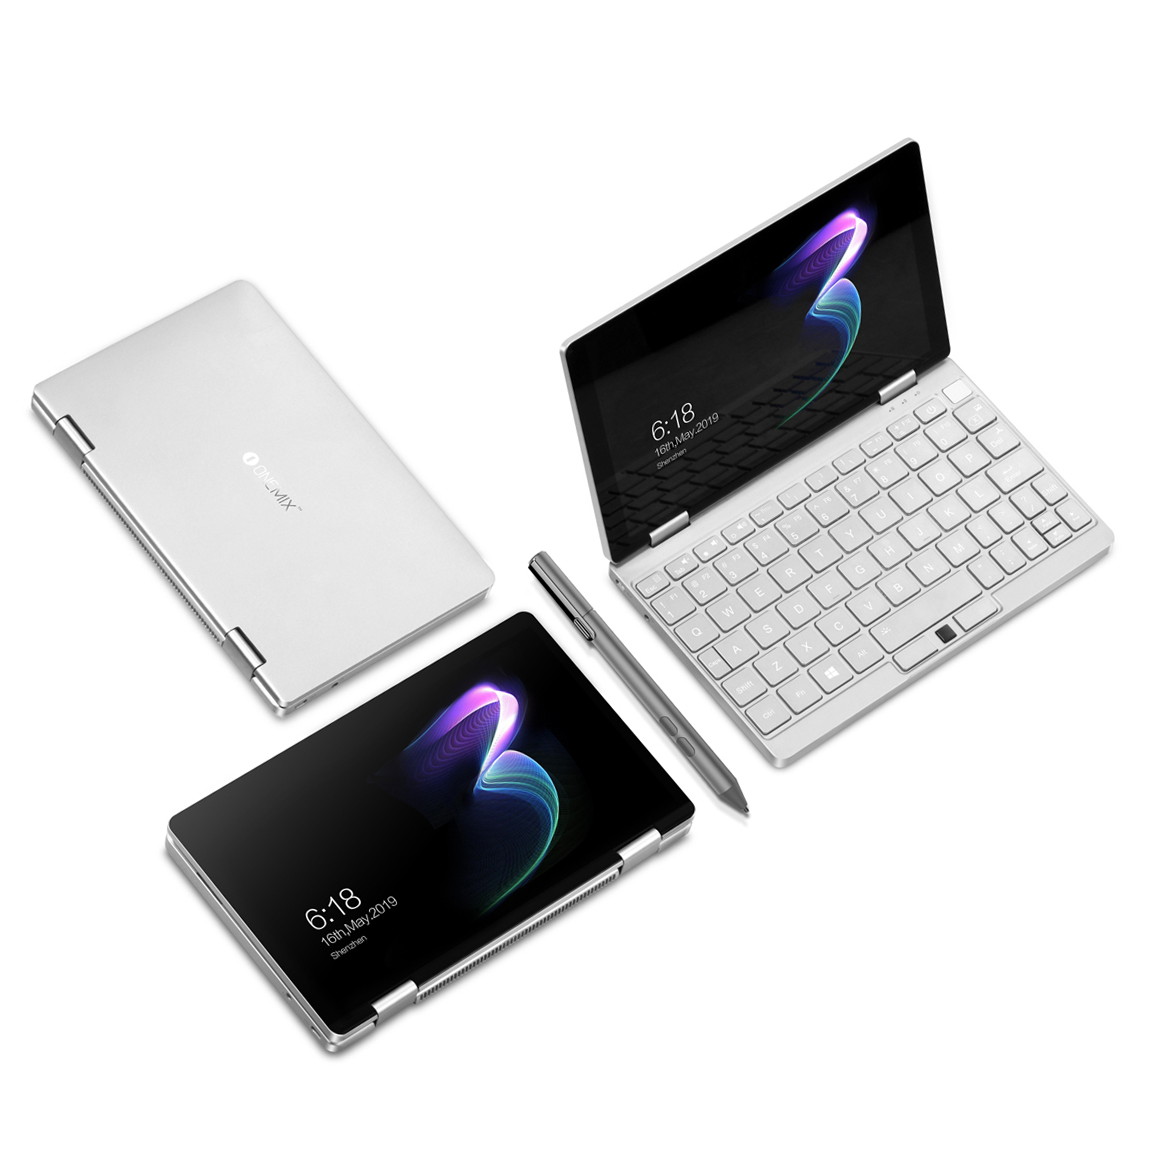 価格.com - One-Netbook、8.4型ミニノートPC「OneMix3」シリーズの先行予約を開始